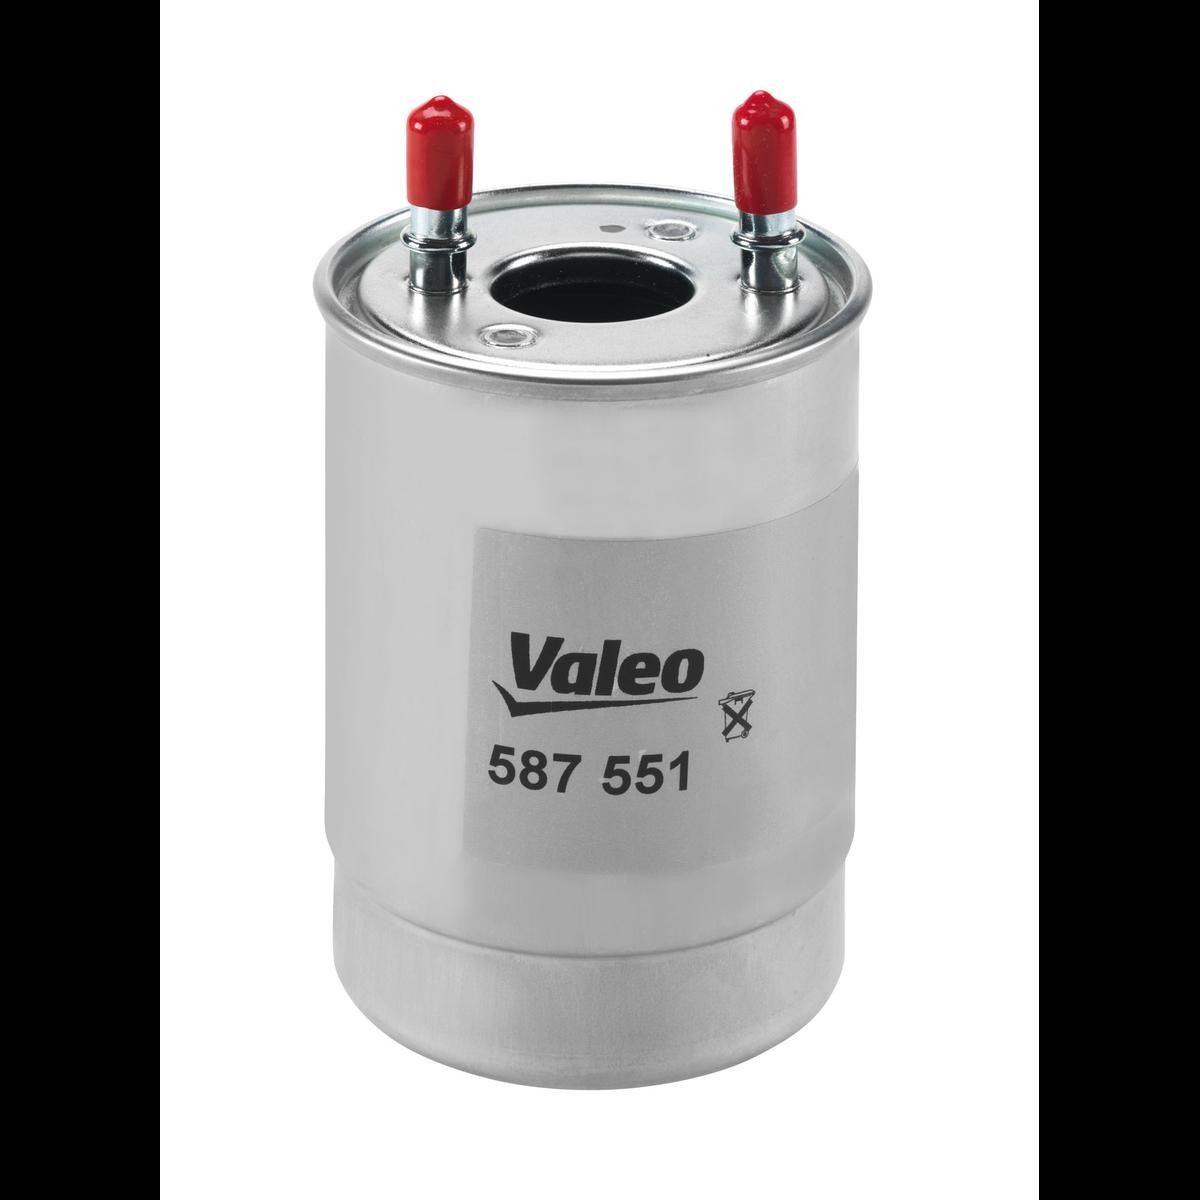 VALEO 587551 Fuel filter 1640 093 84R